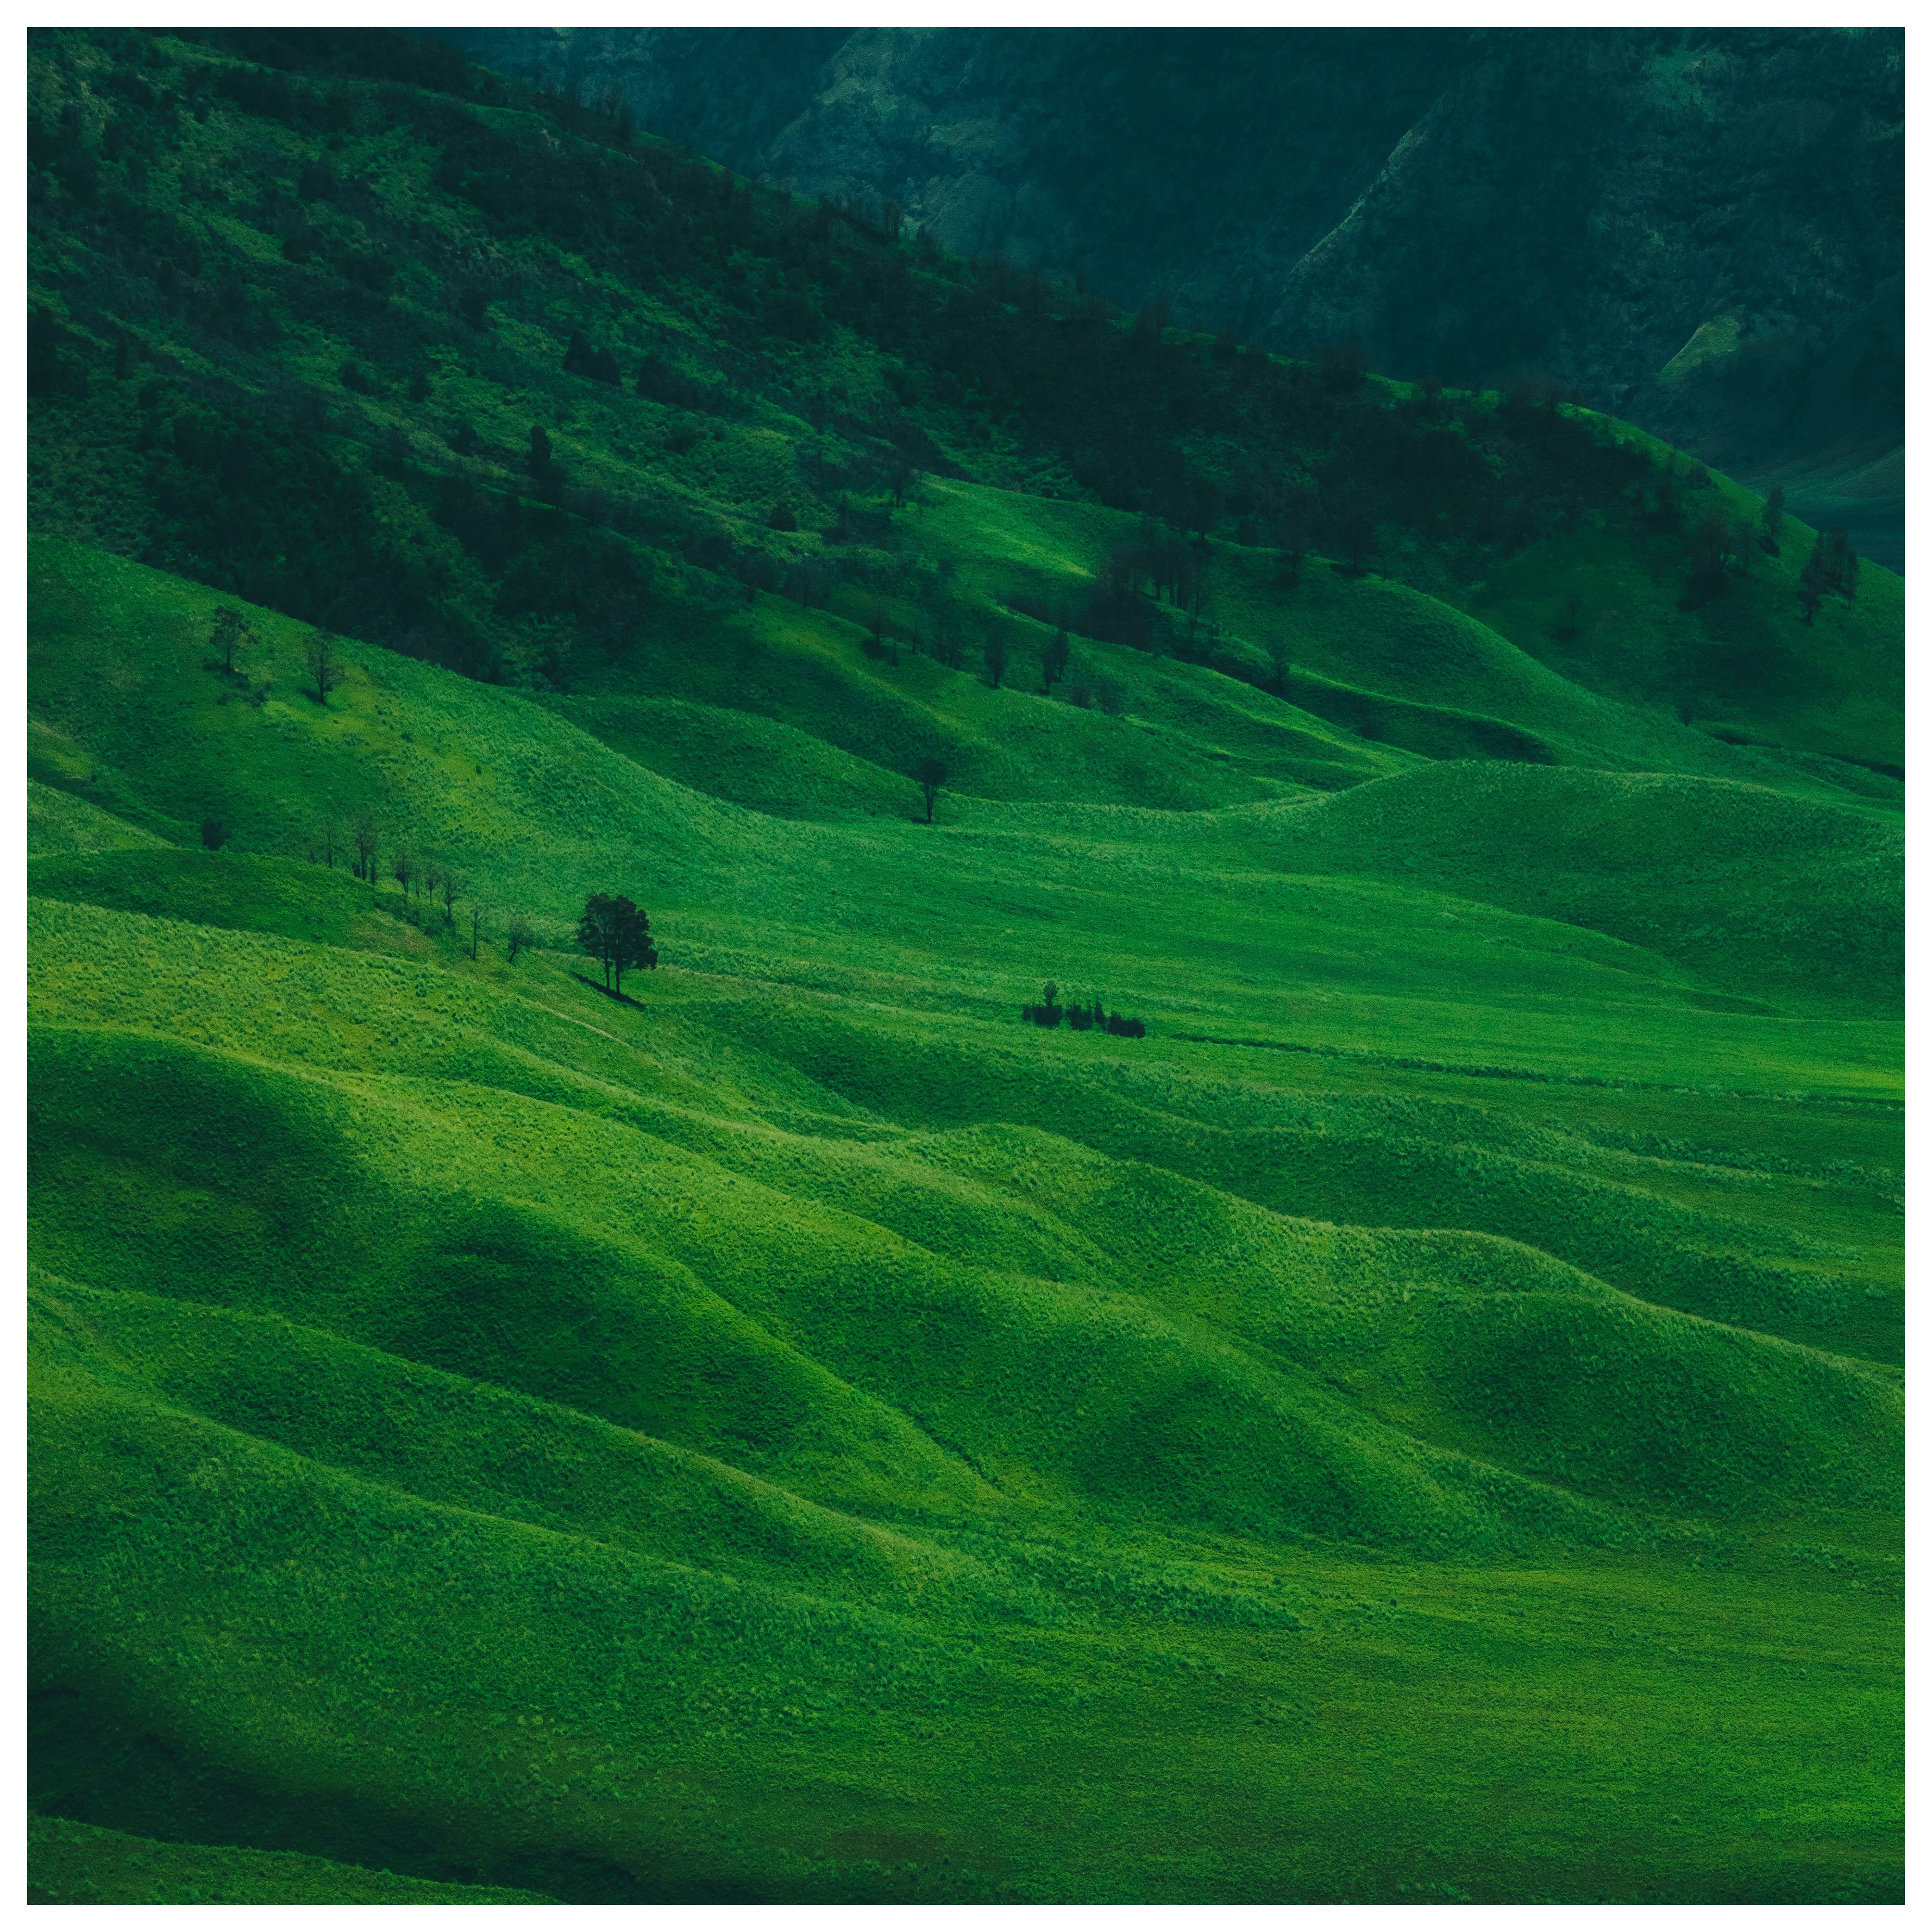 green fields